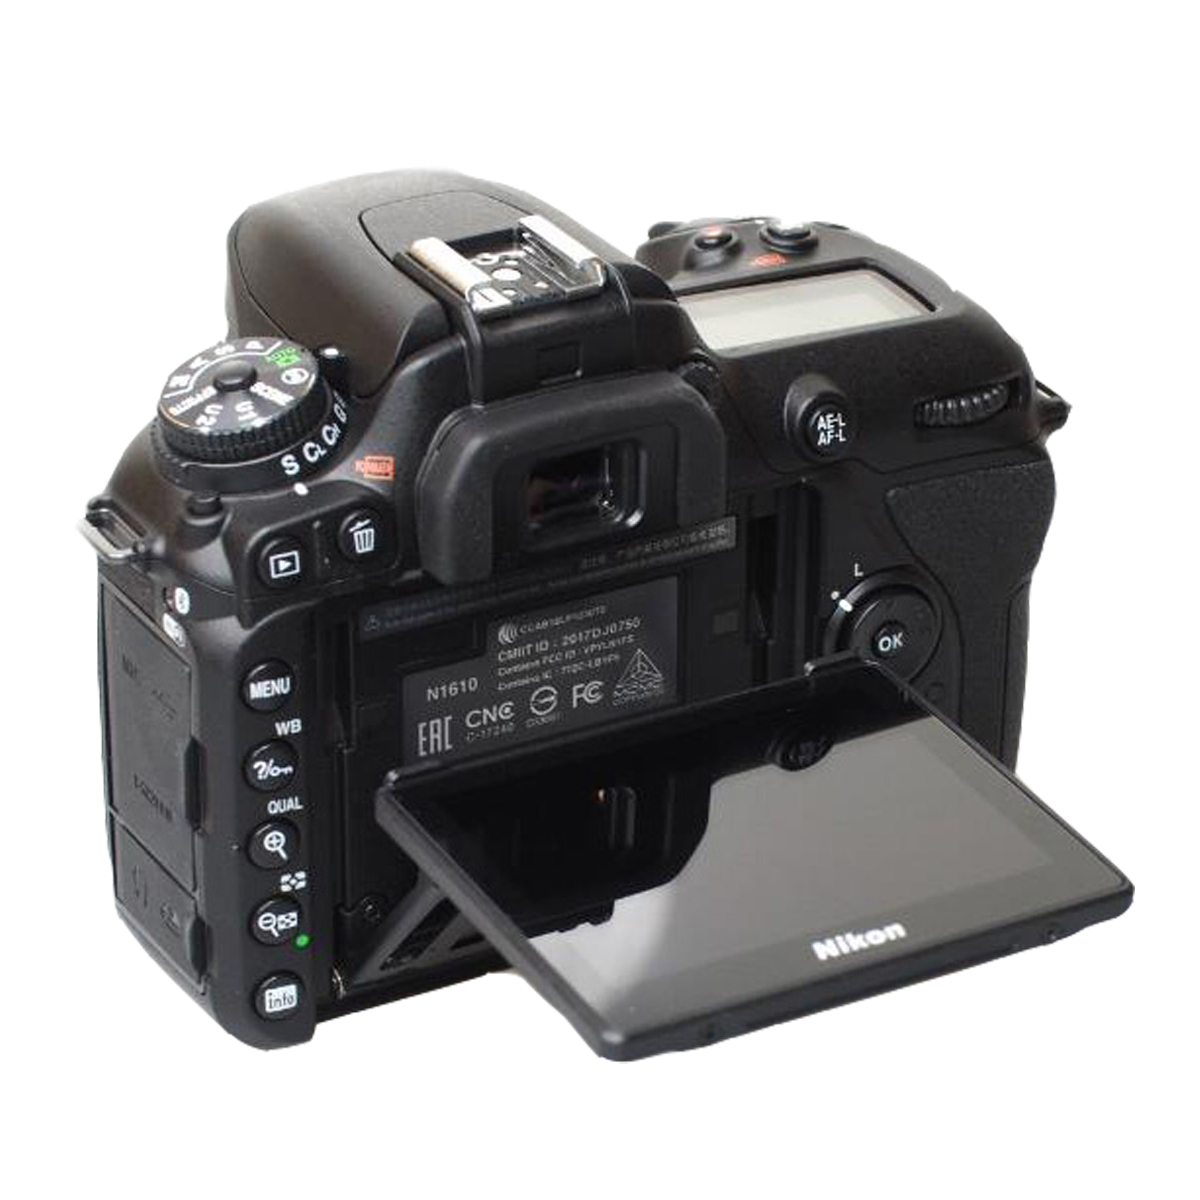 D WLAN- Spiegelreflexkamera Digitalkameragehäuse Black, 7500 LCD, NIKON